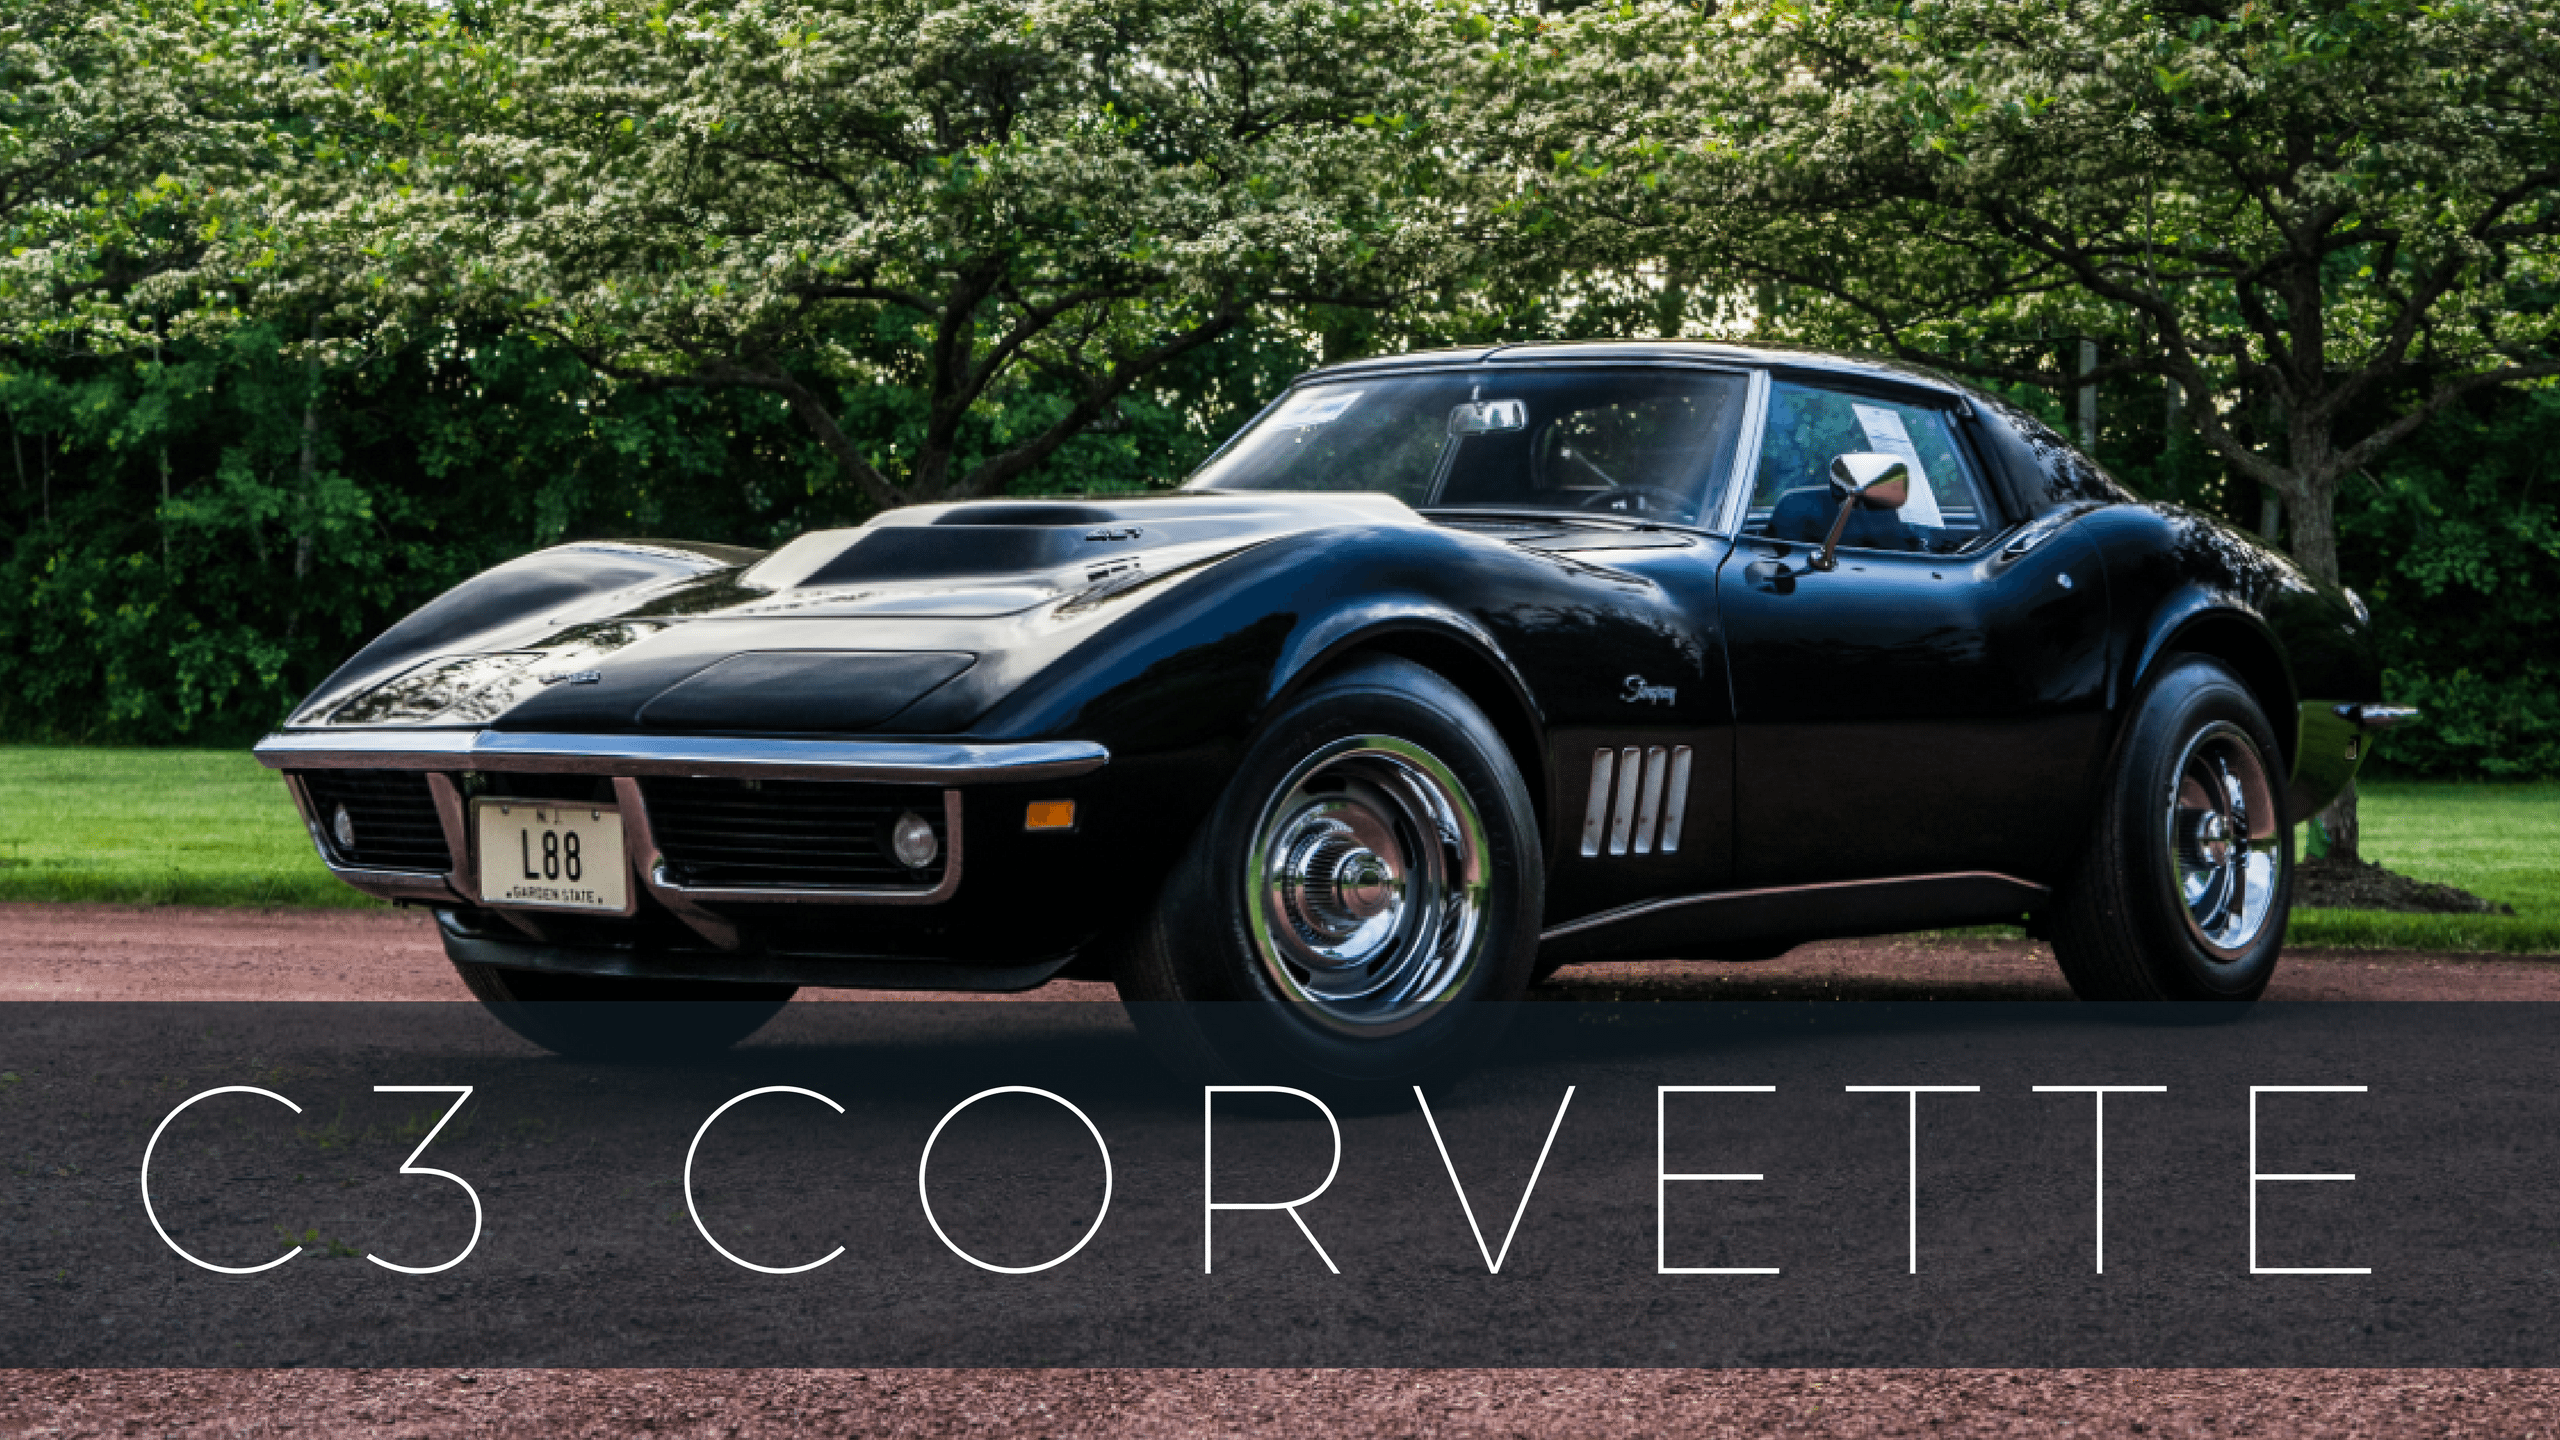 Corvette Generation Logo - Corvette Models - Full List of Chevrolet Corvette Models & Years